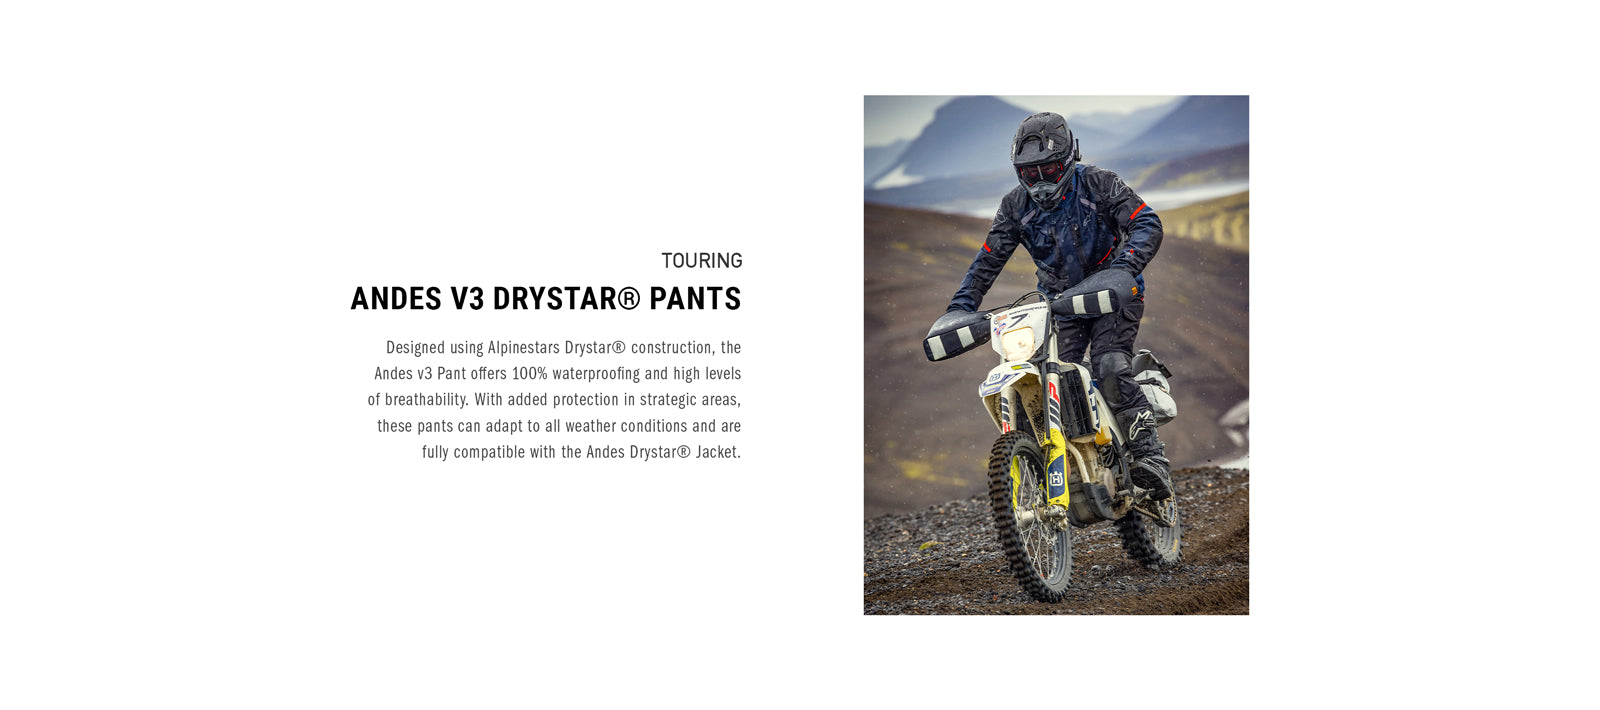 Andes V3 Drystar<sup>®</sup> Pantalones